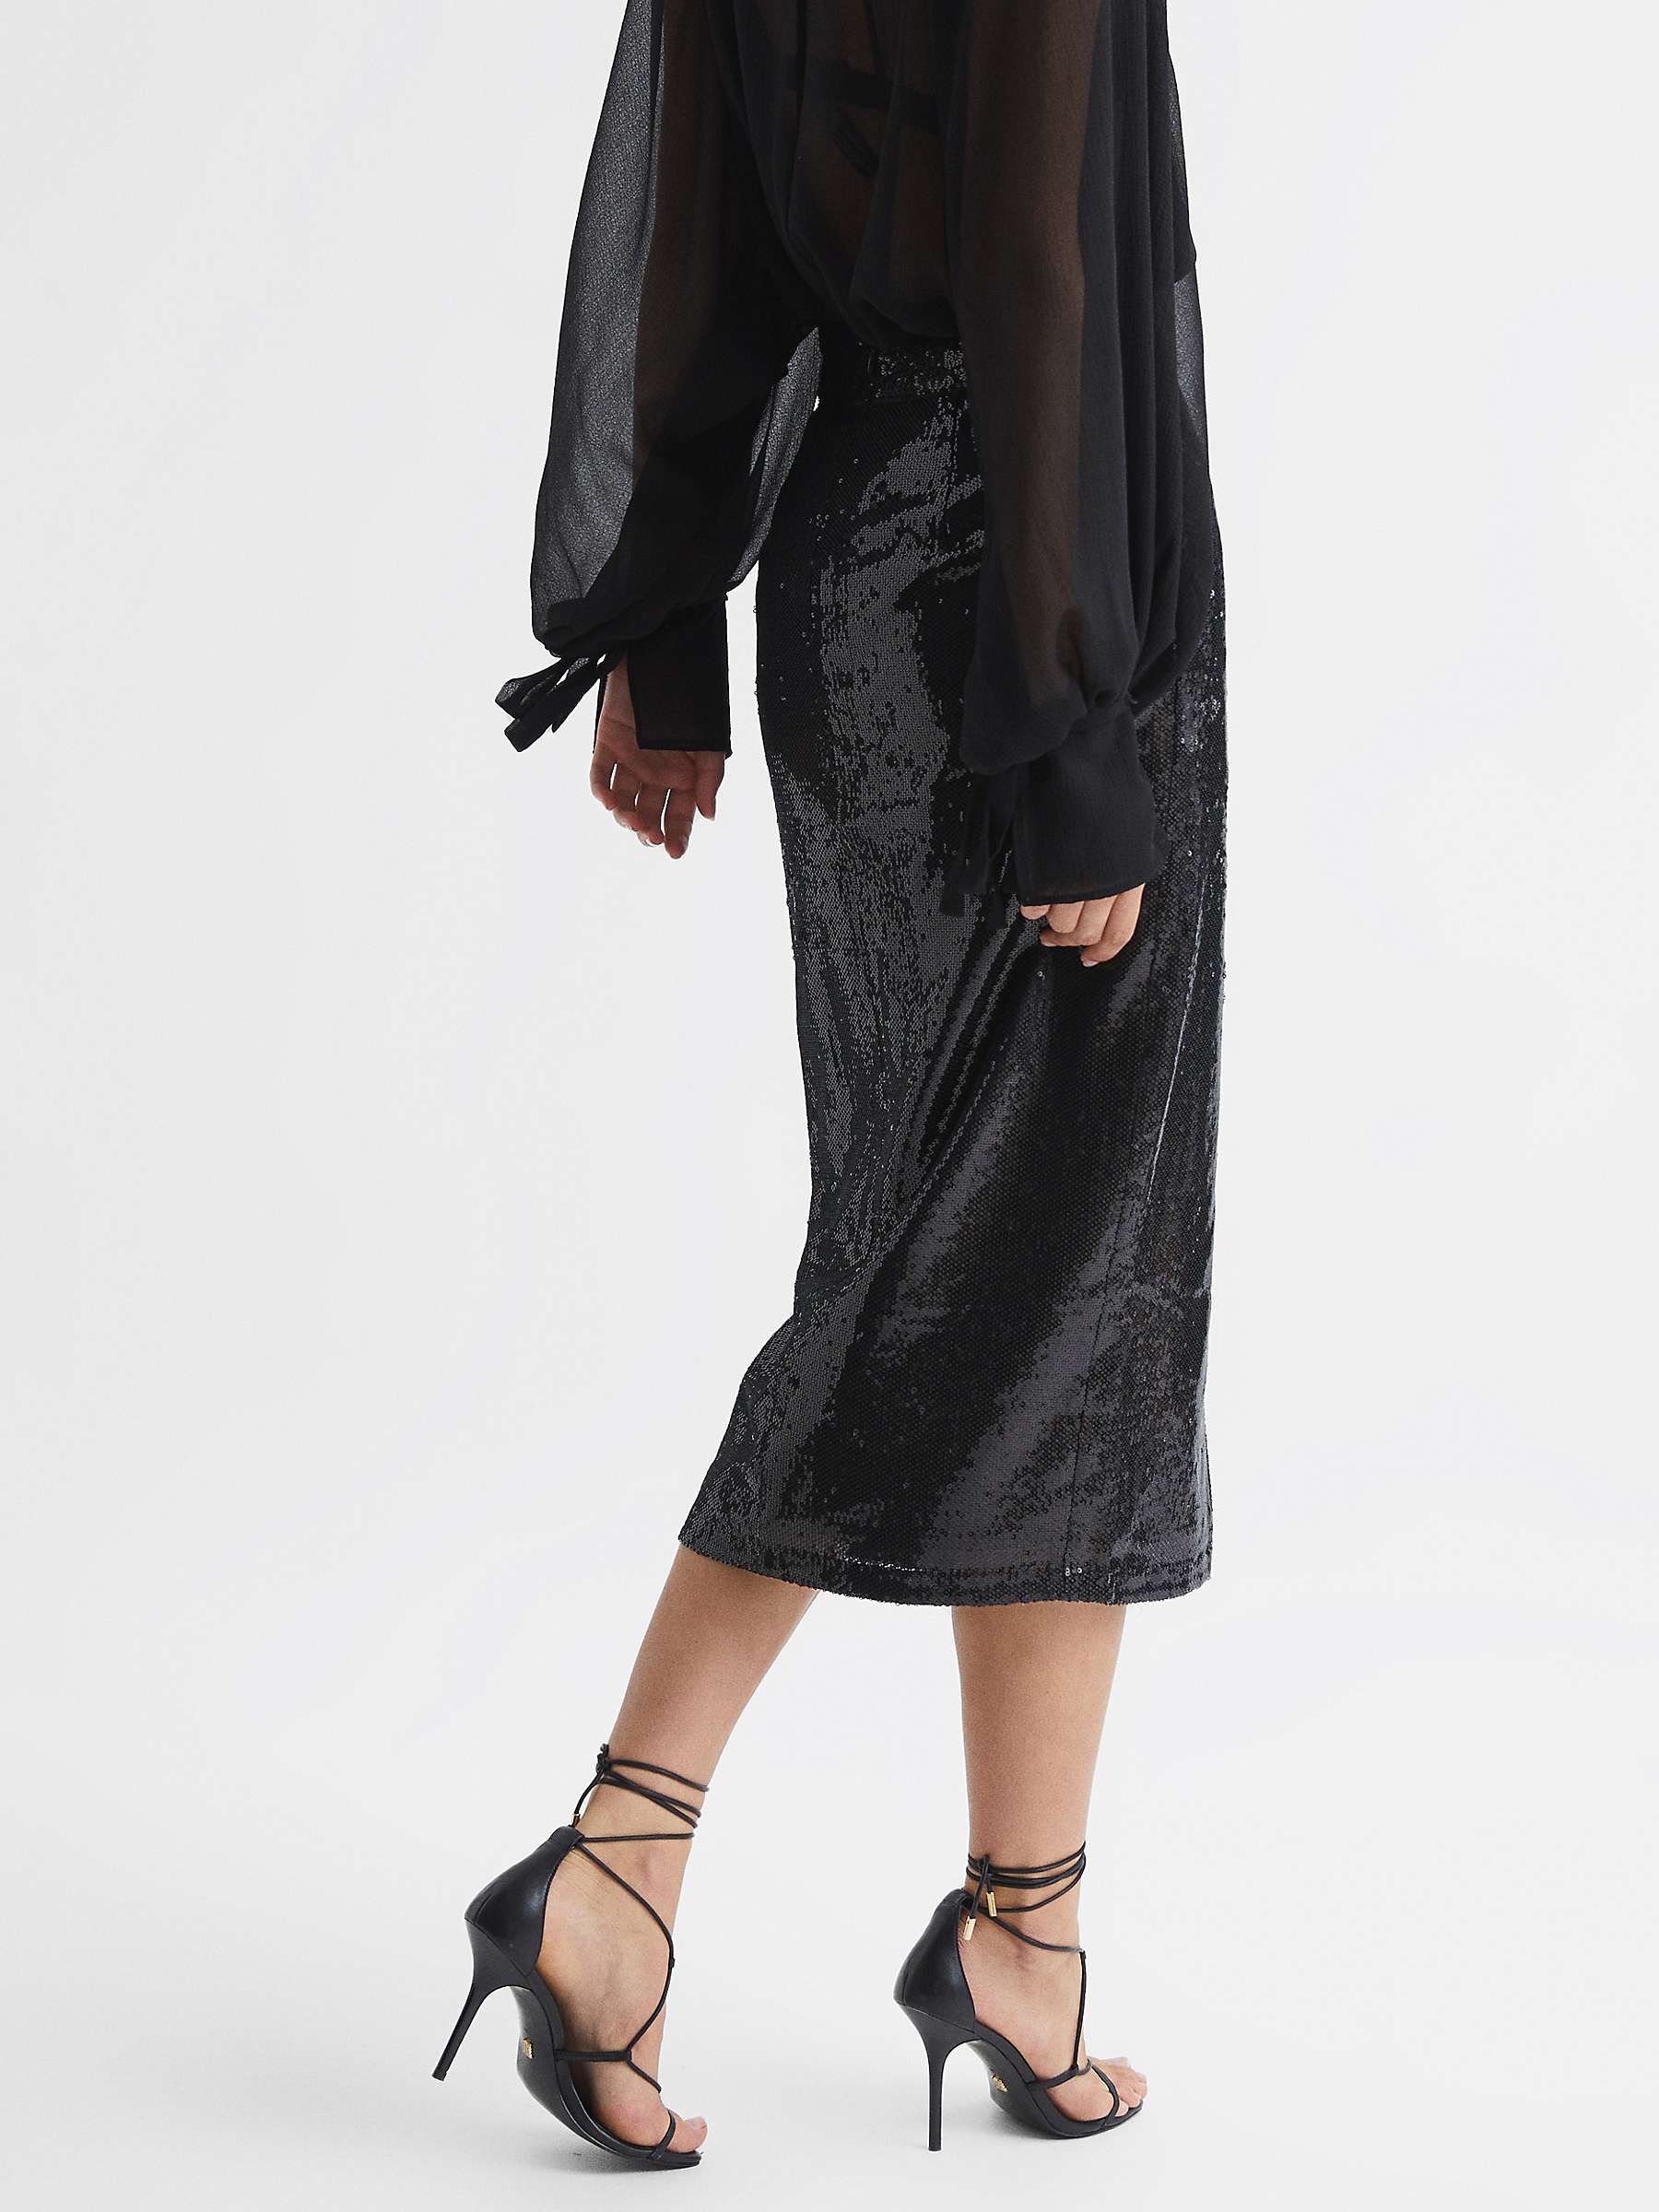 Reiss Dakota Sequin Midi Skirt, Black at John Lewis & Partners